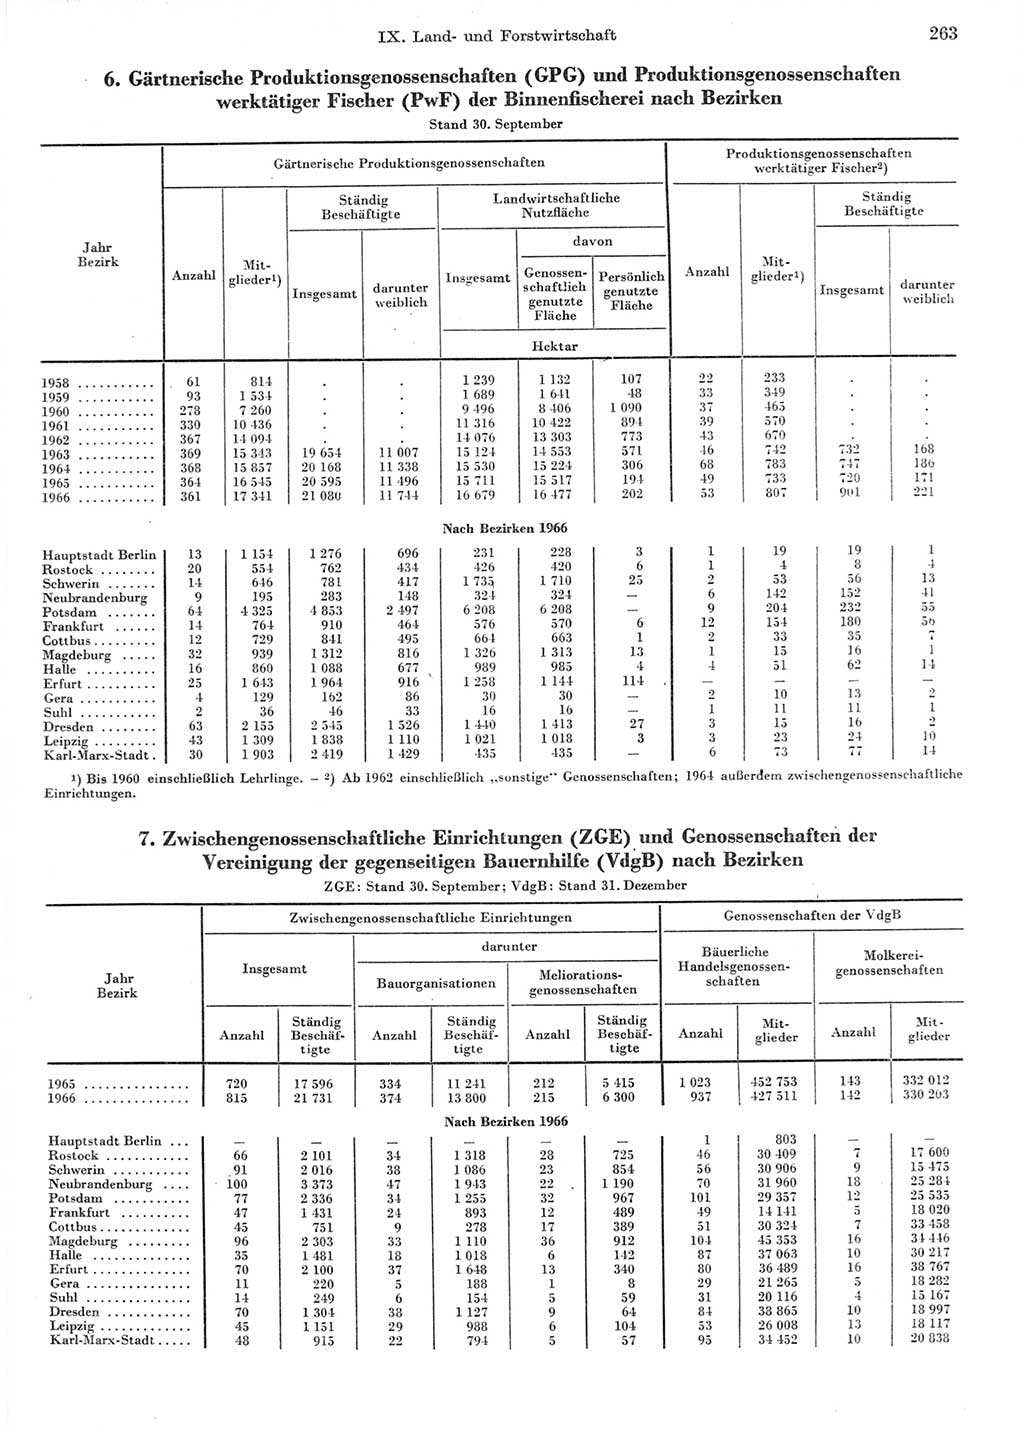 Statistisches Jahrbuch der Deutschen Demokratischen Republik (DDR) 1967, Seite 263 (Stat. Jb. DDR 1967, S. 263)